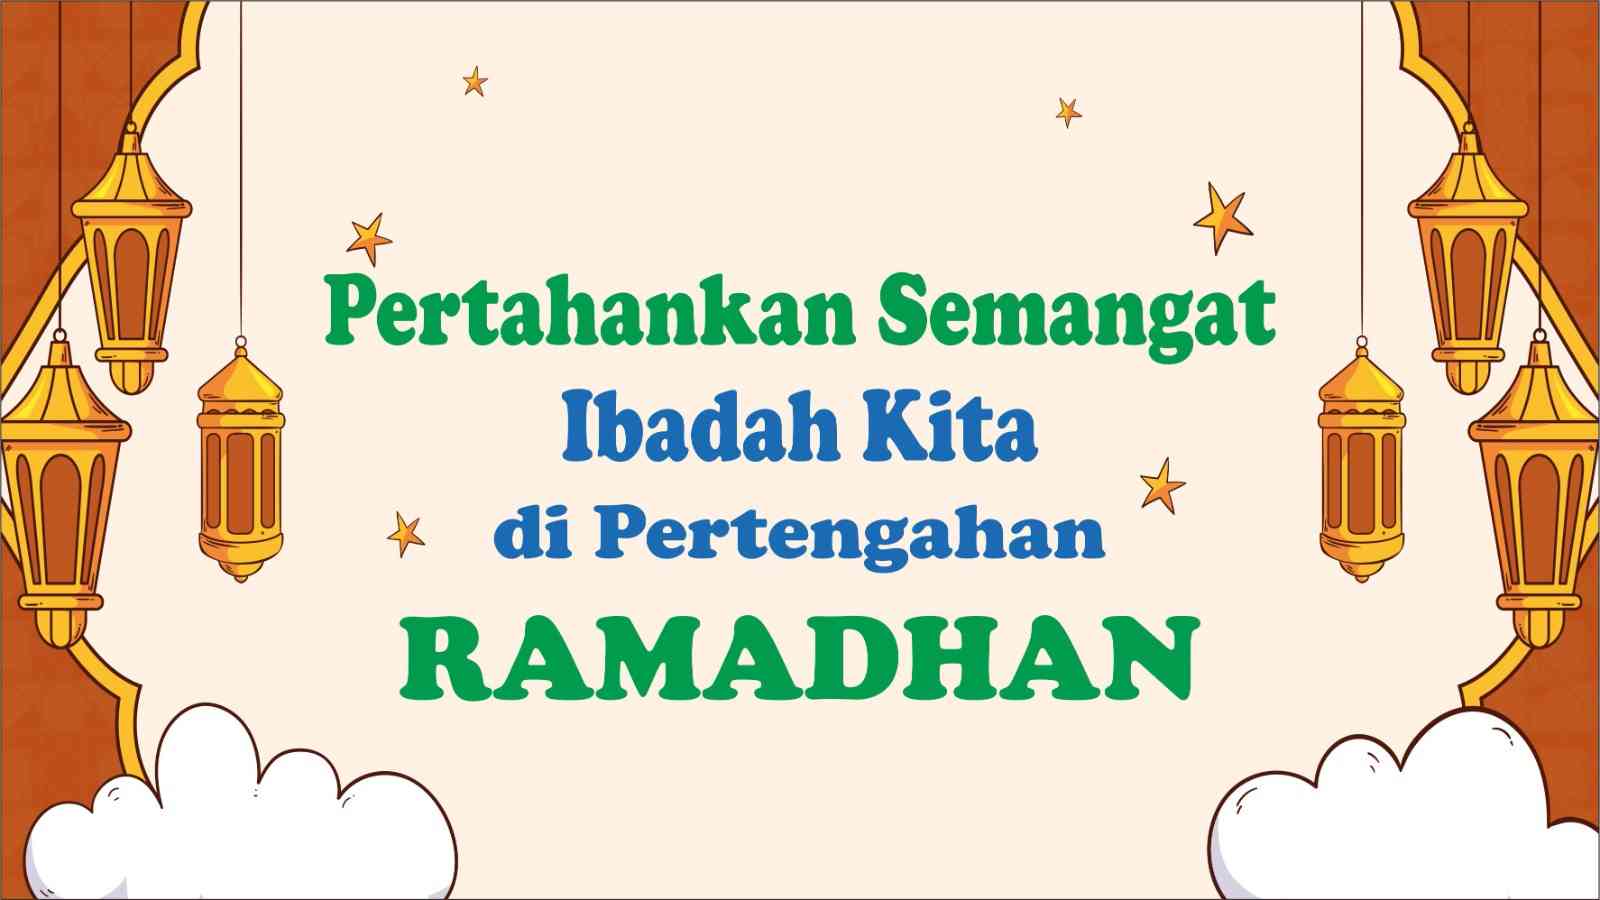 Pertahankan Semangat Ibadah Kita di Pertengahan Ramadhan